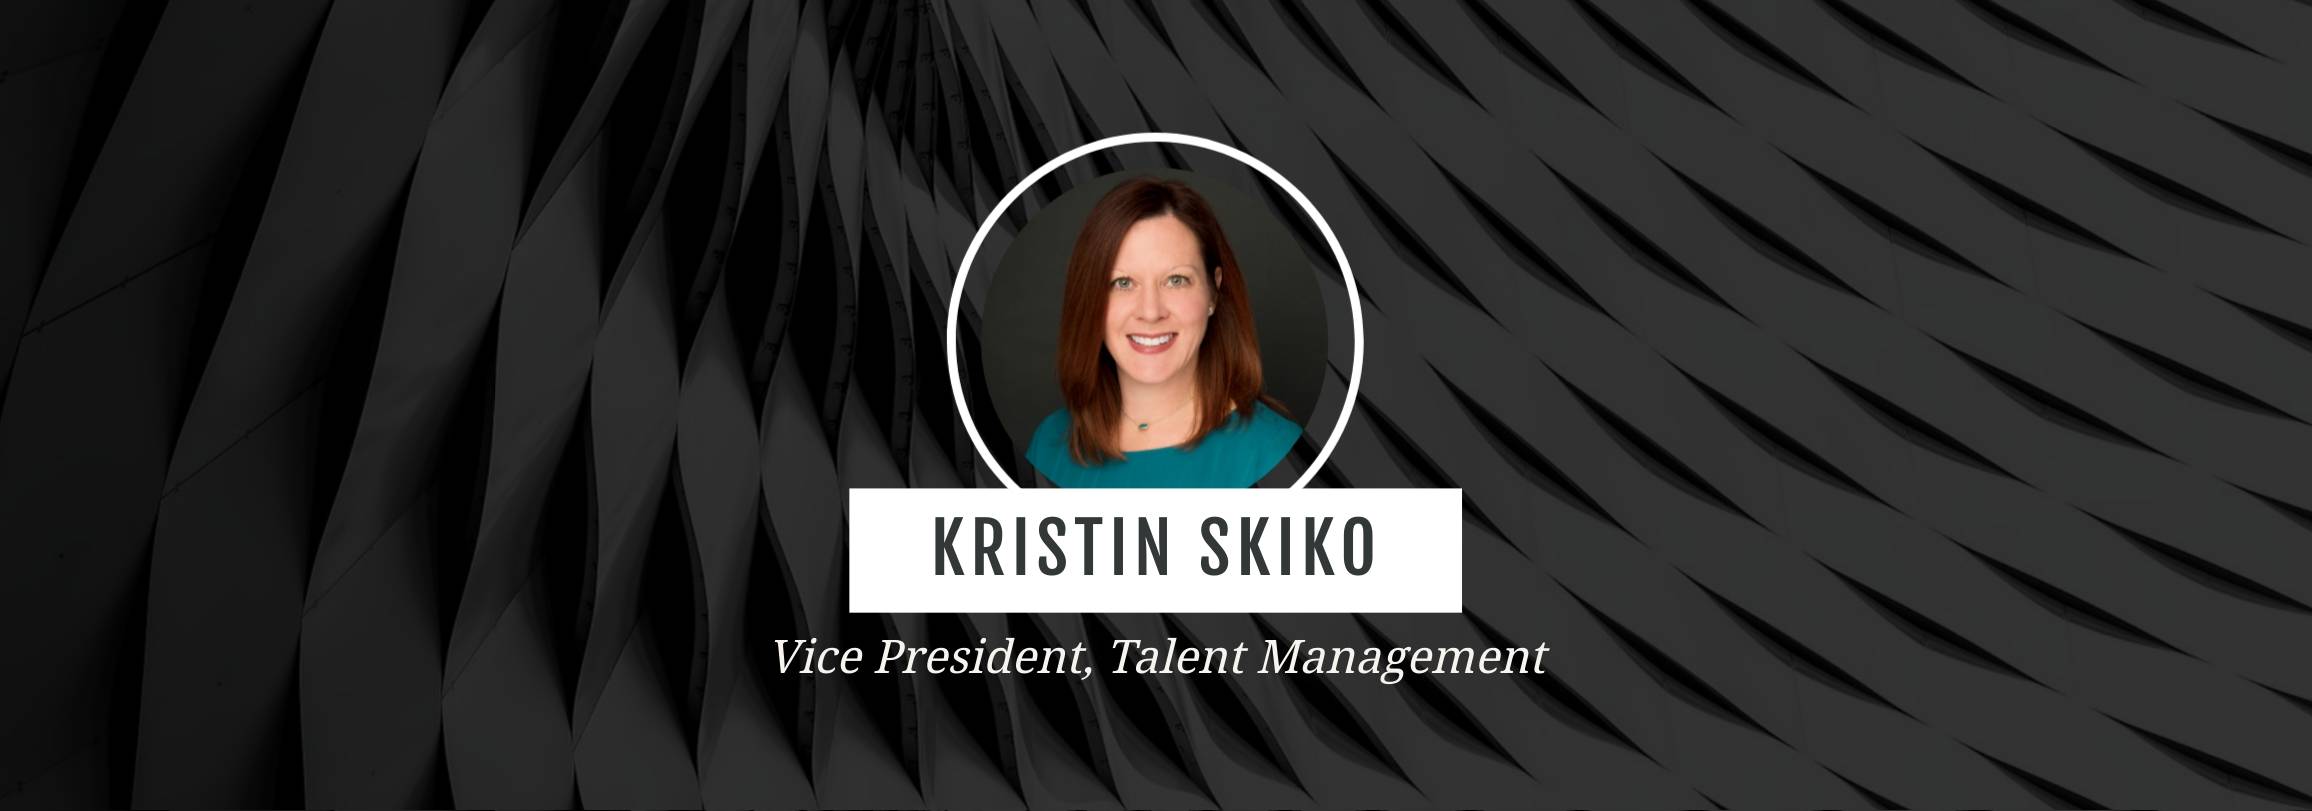 Kristin Skiko VP Talent Management